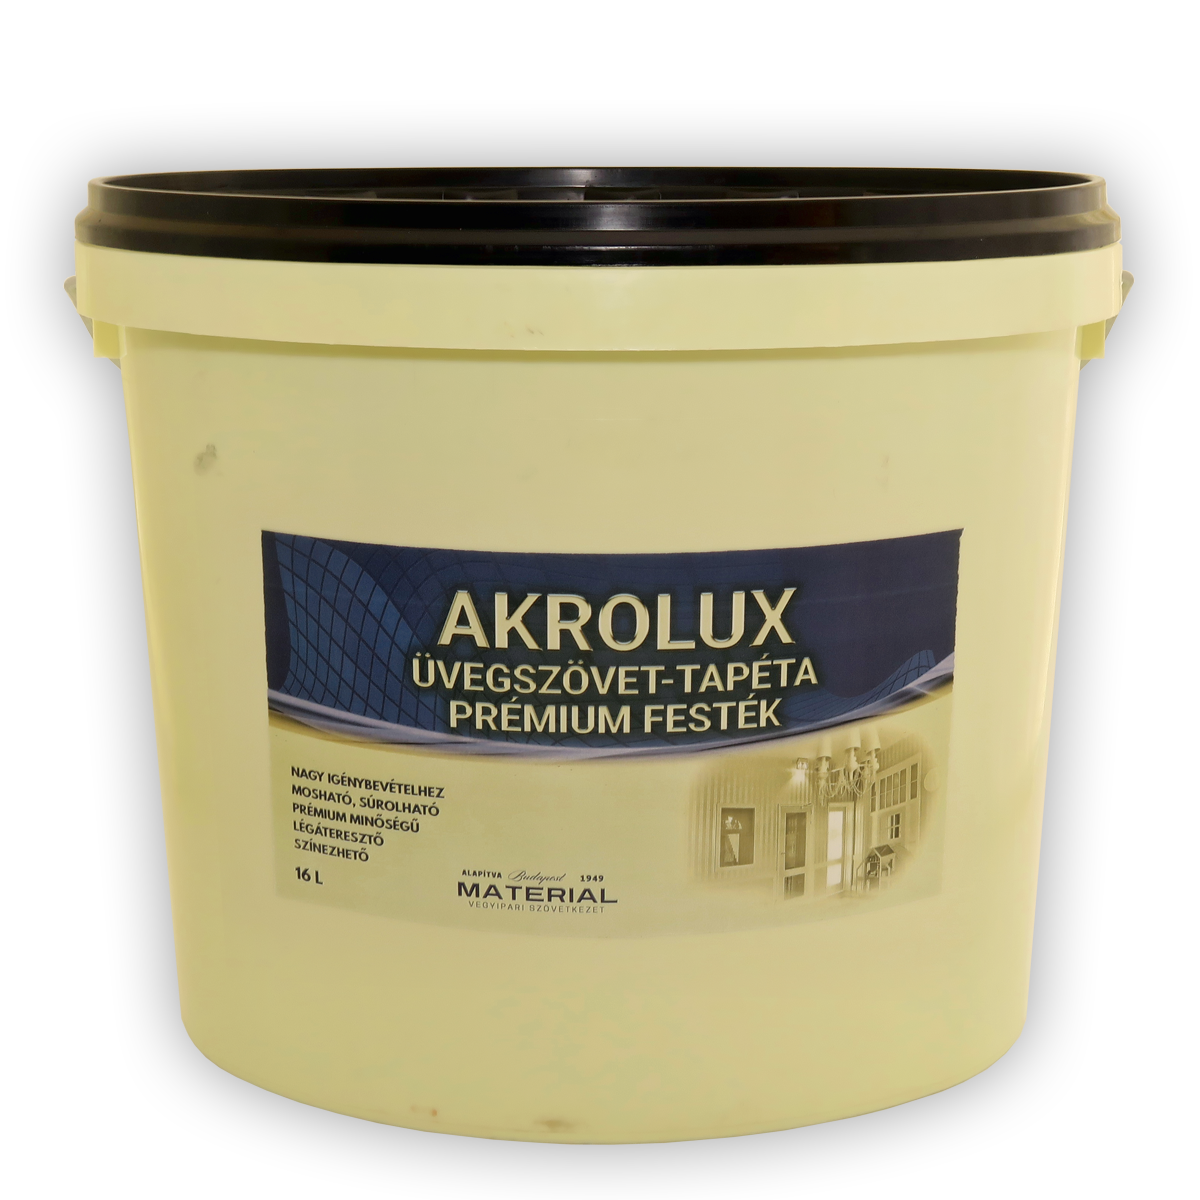 AKROLUX üvegszövet-tapéta prémium festék